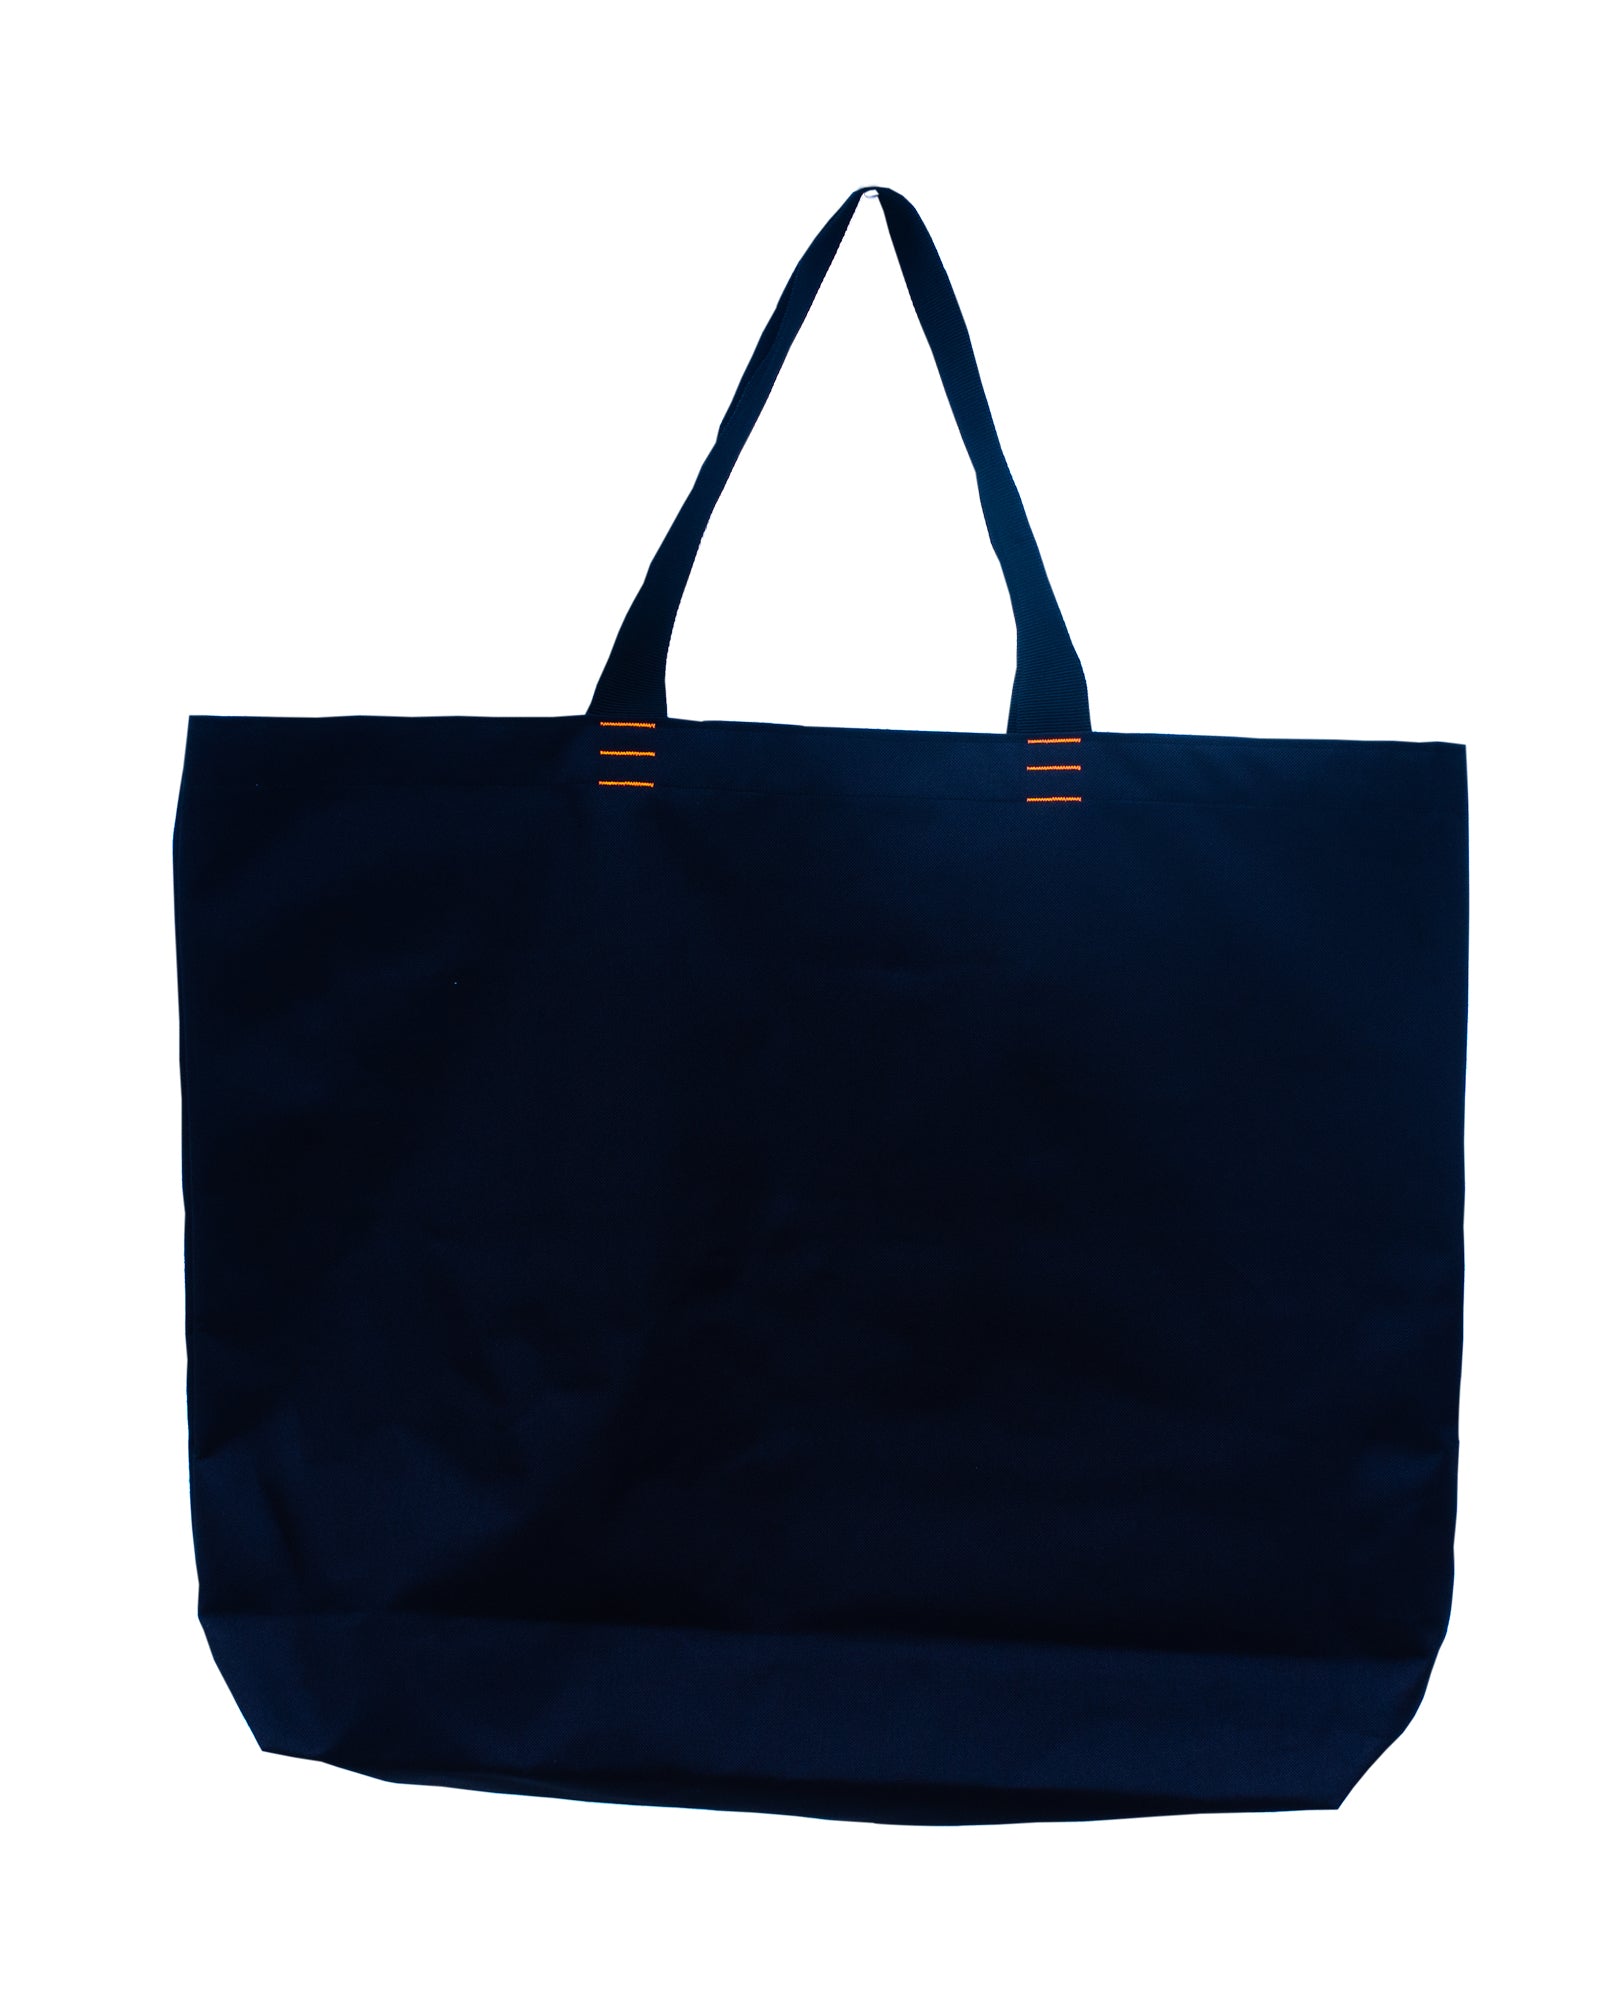 BIGBLACK BAG, design No 7